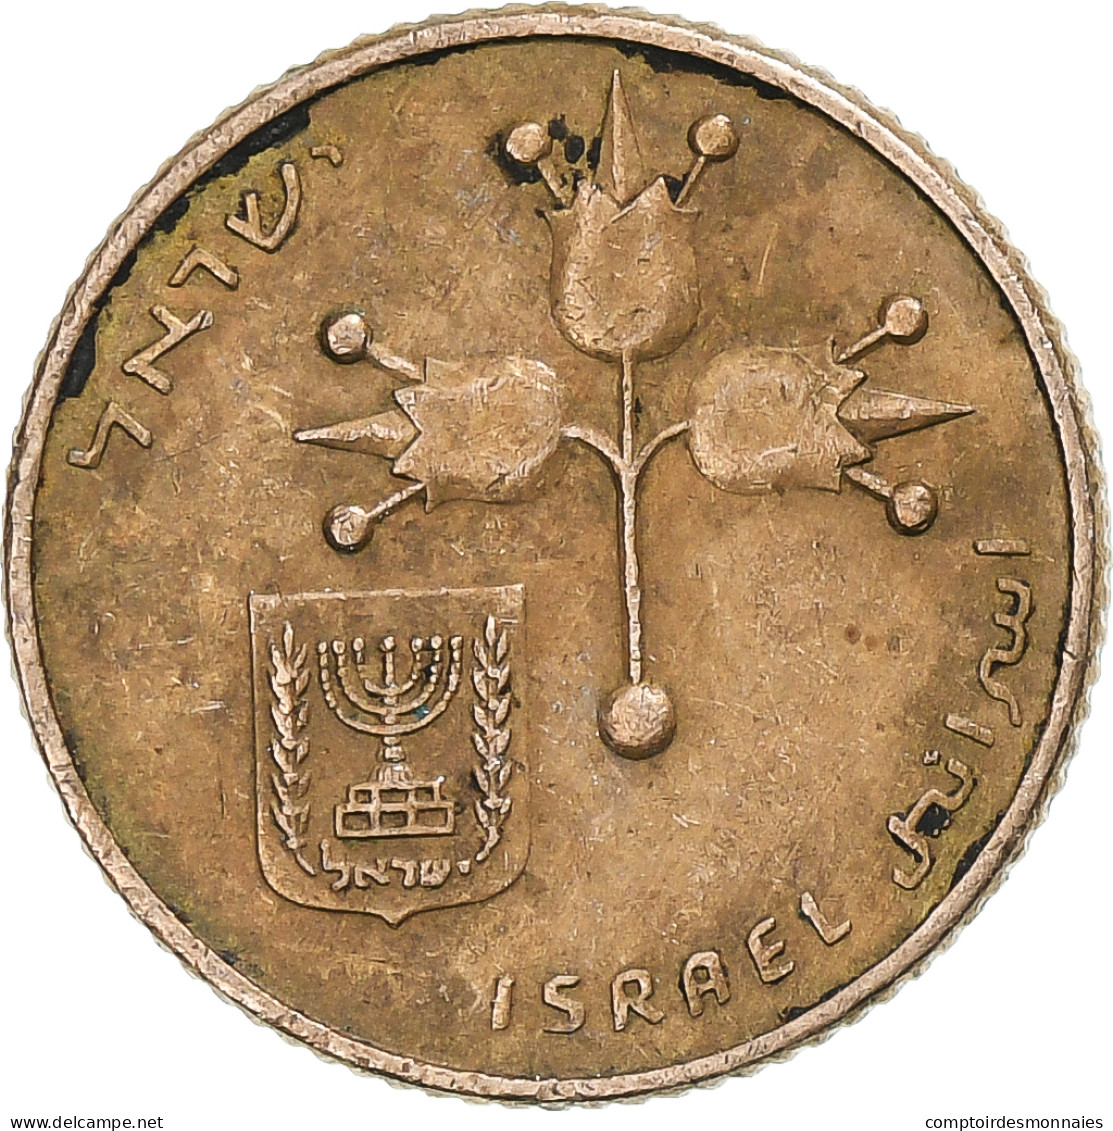 Israël, 10 Agorot, 1966 - Israel